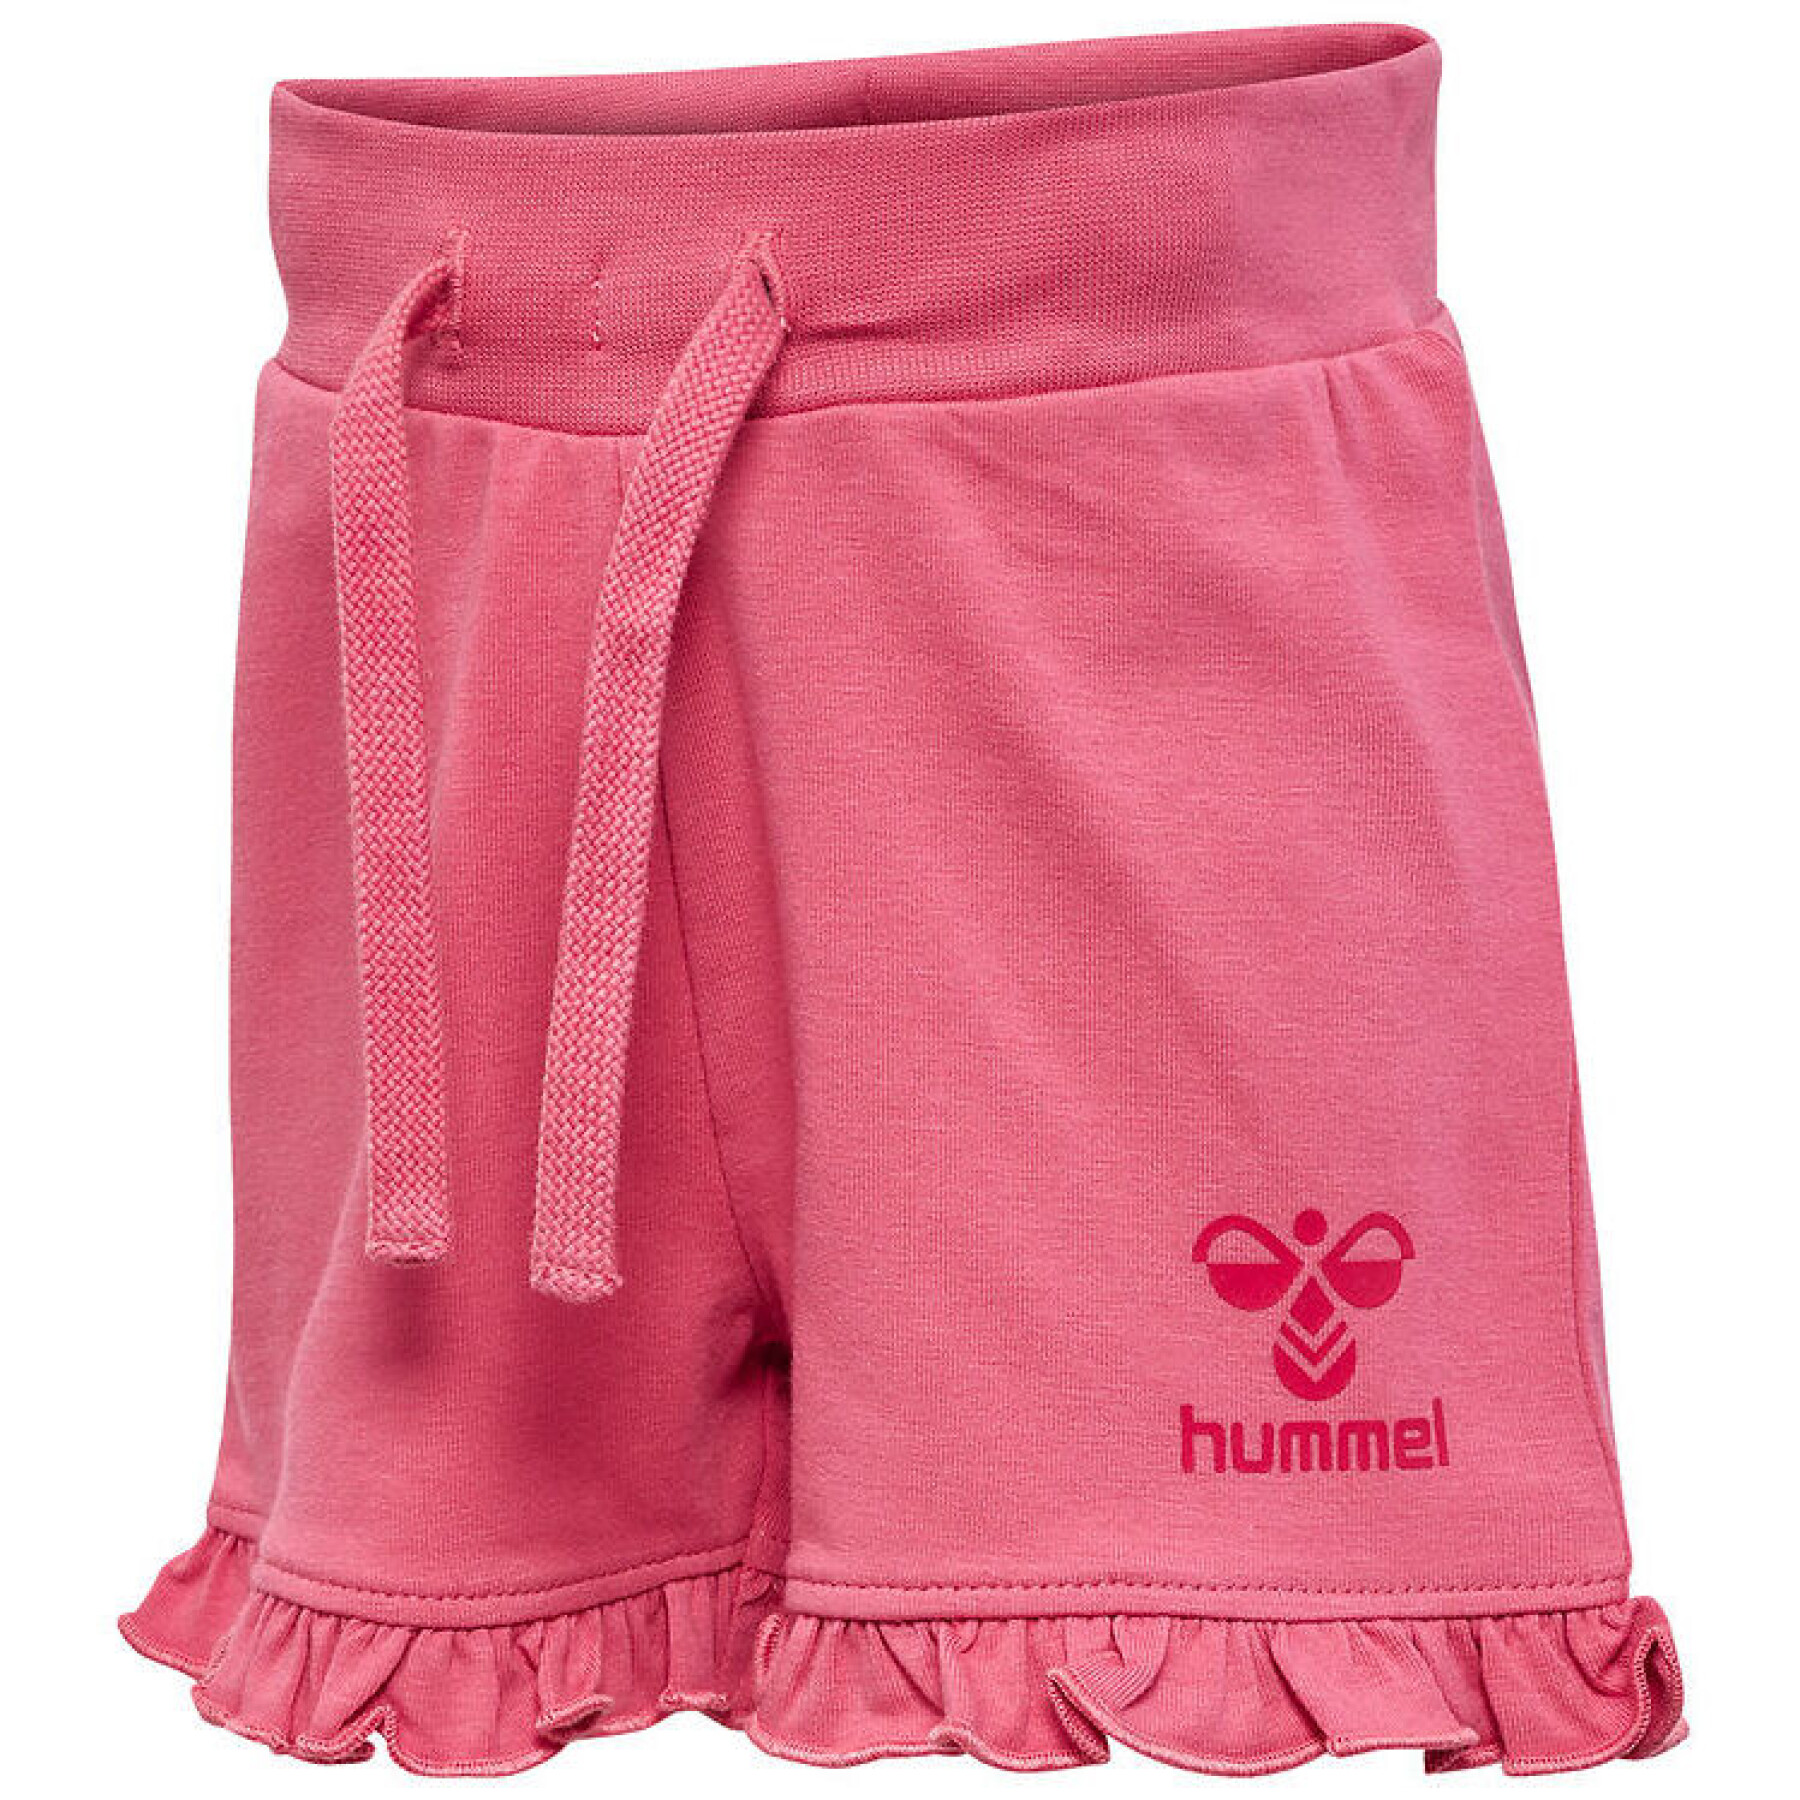 Shorts für Babies Hummel Ulla